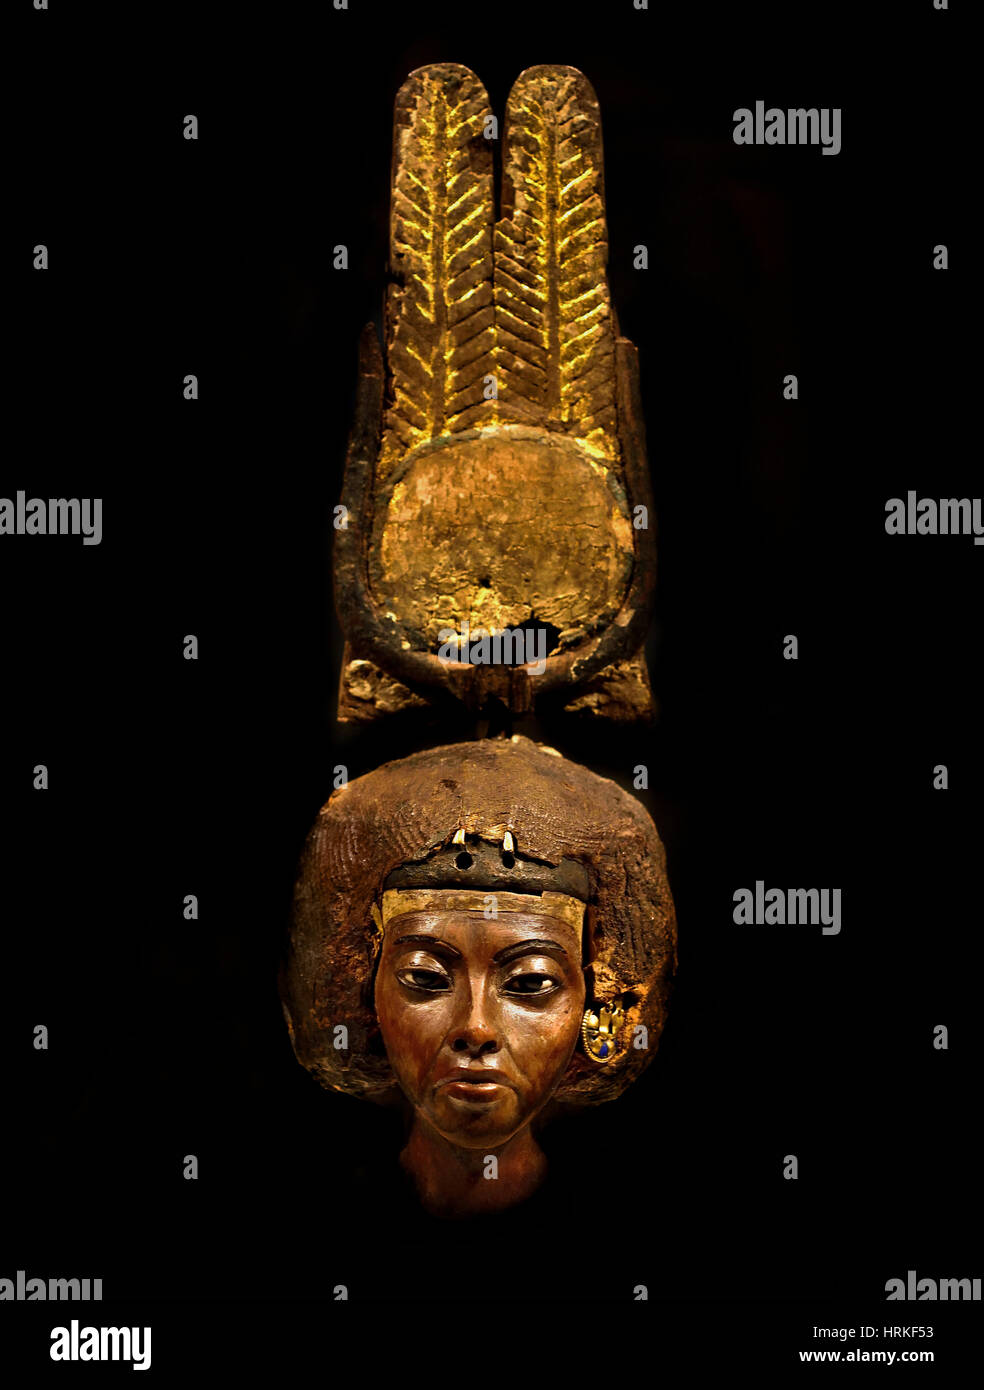 Testa di una statuetta della regina Teje Amenophis (Amenhotep) III. Medinet el-Ghurob (Egitto / Fayum) legno di tasso, oro, argento, lapislazzuli, tessile, faience, stucco, 32.7 x 7.8 x 8.2 cm Foto Stock